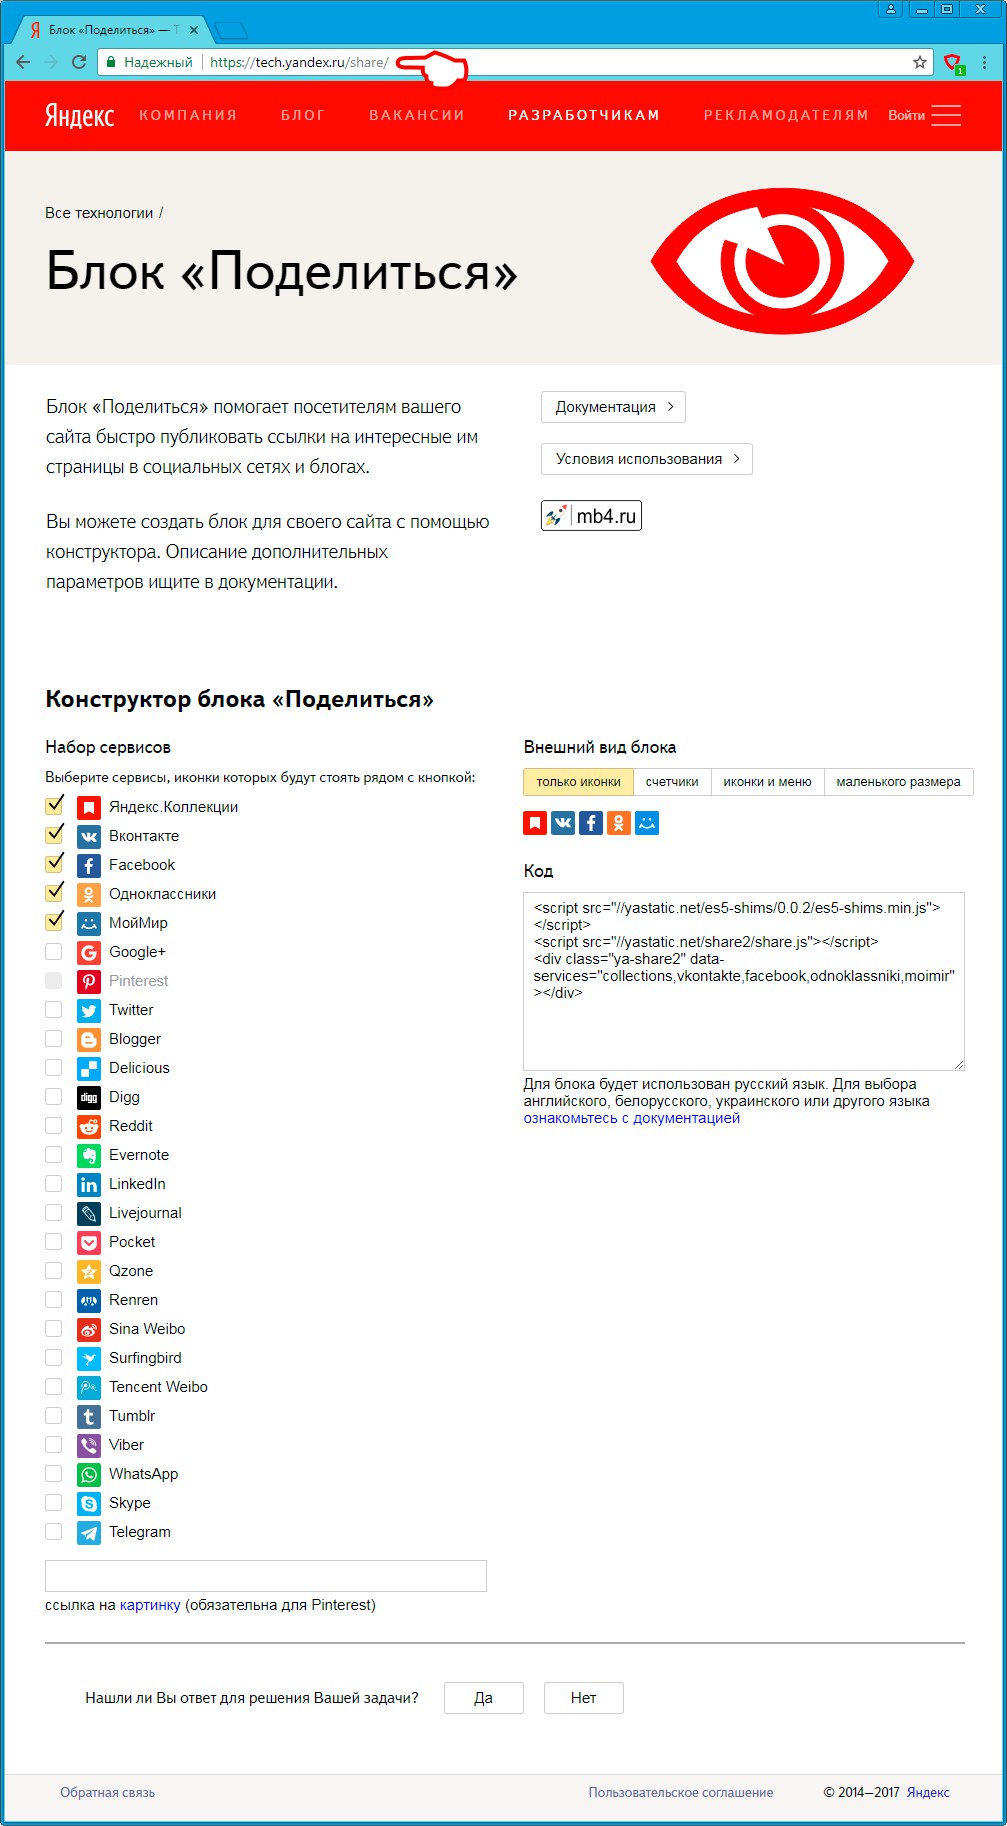 Внешний вид страницы с Блоком «Поделиться» Яндекса